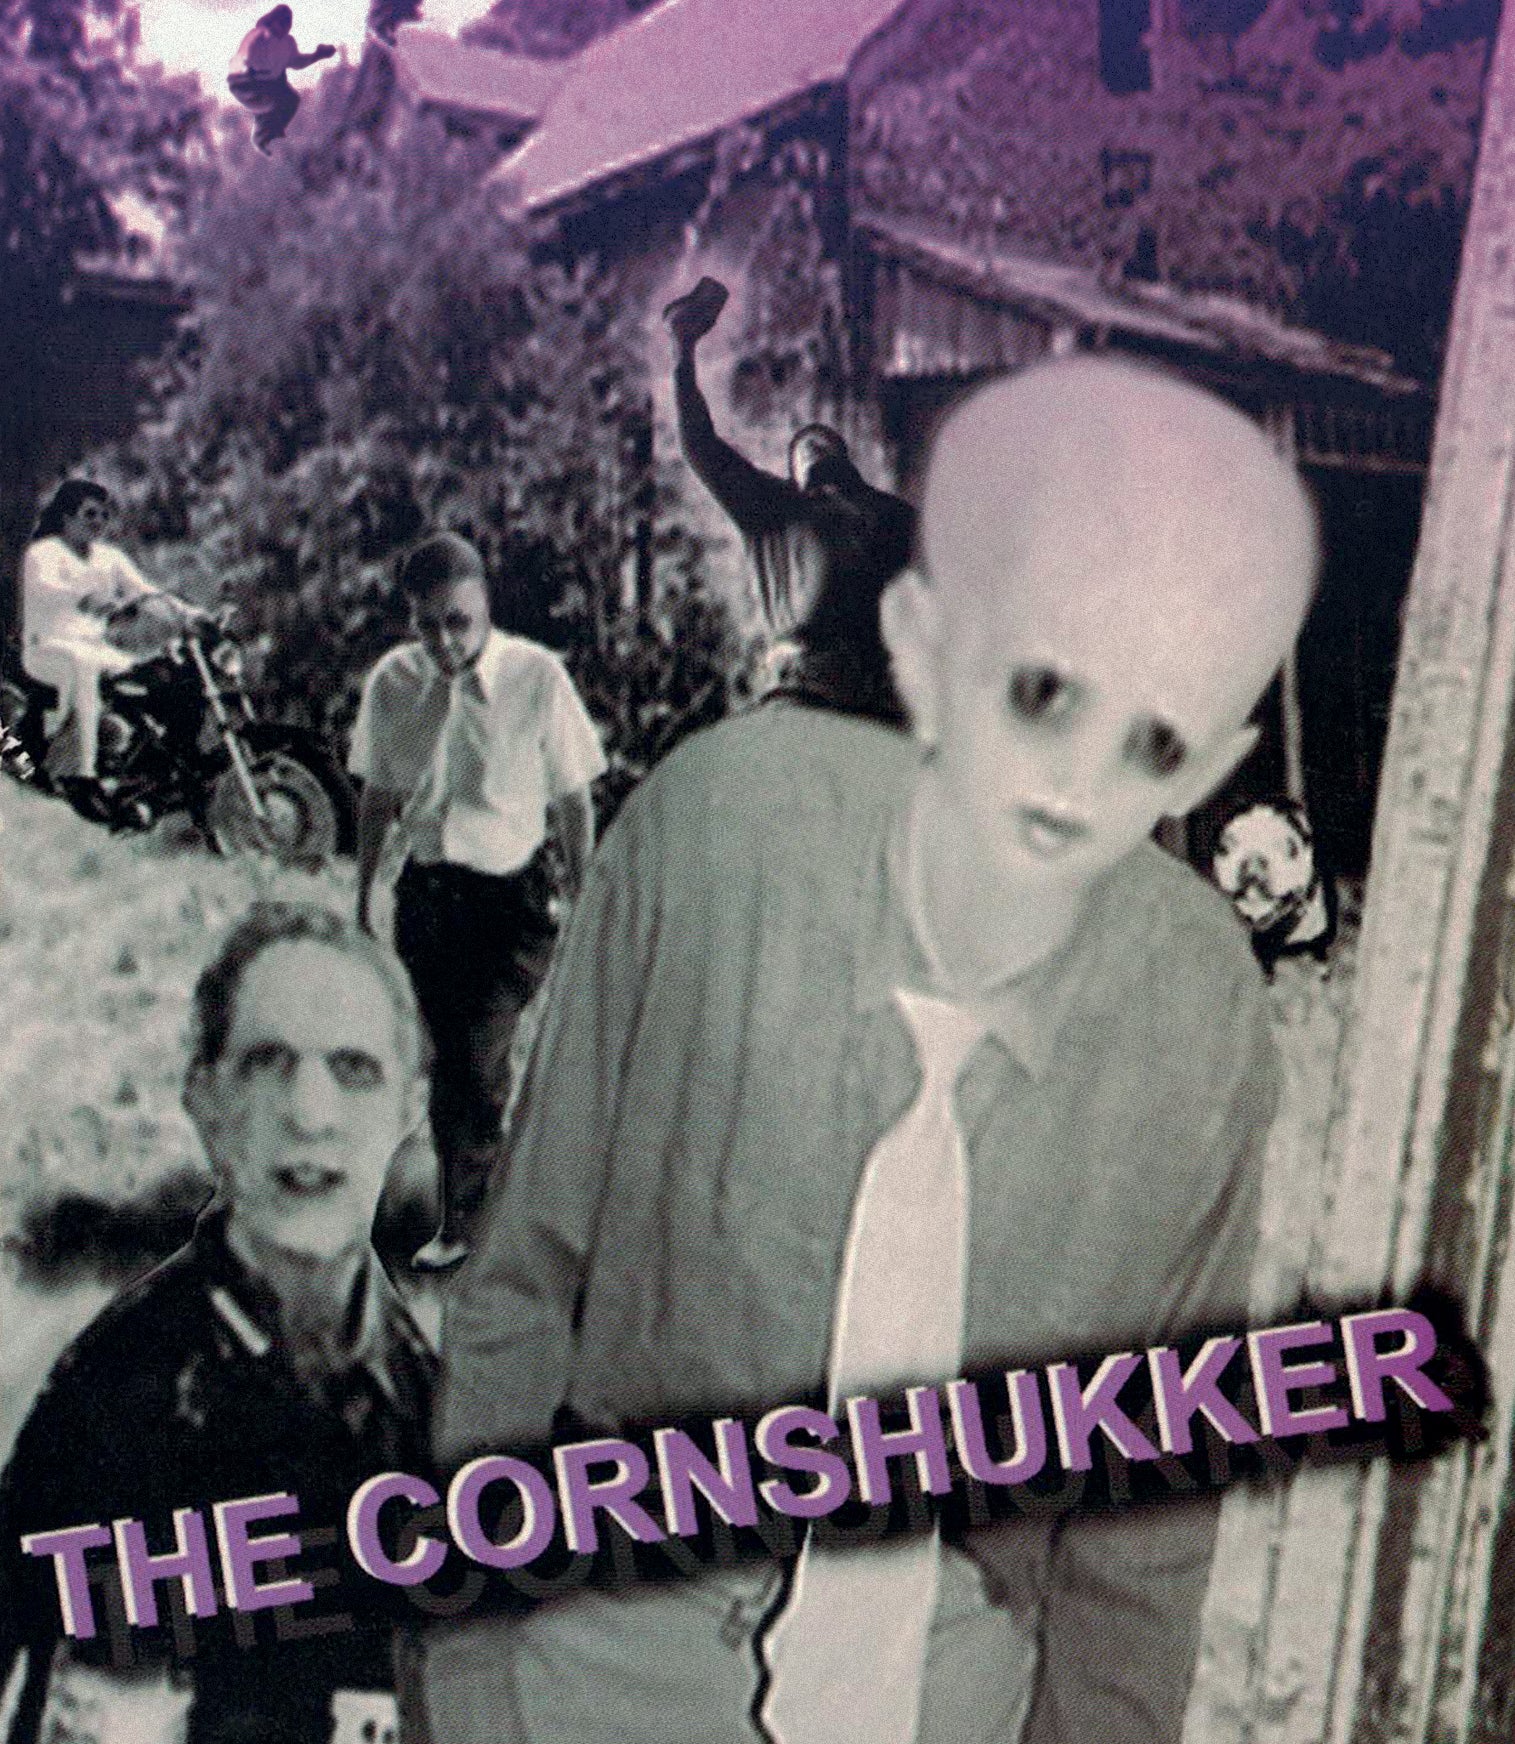 THE CORNSHUKKER BLU-RAY